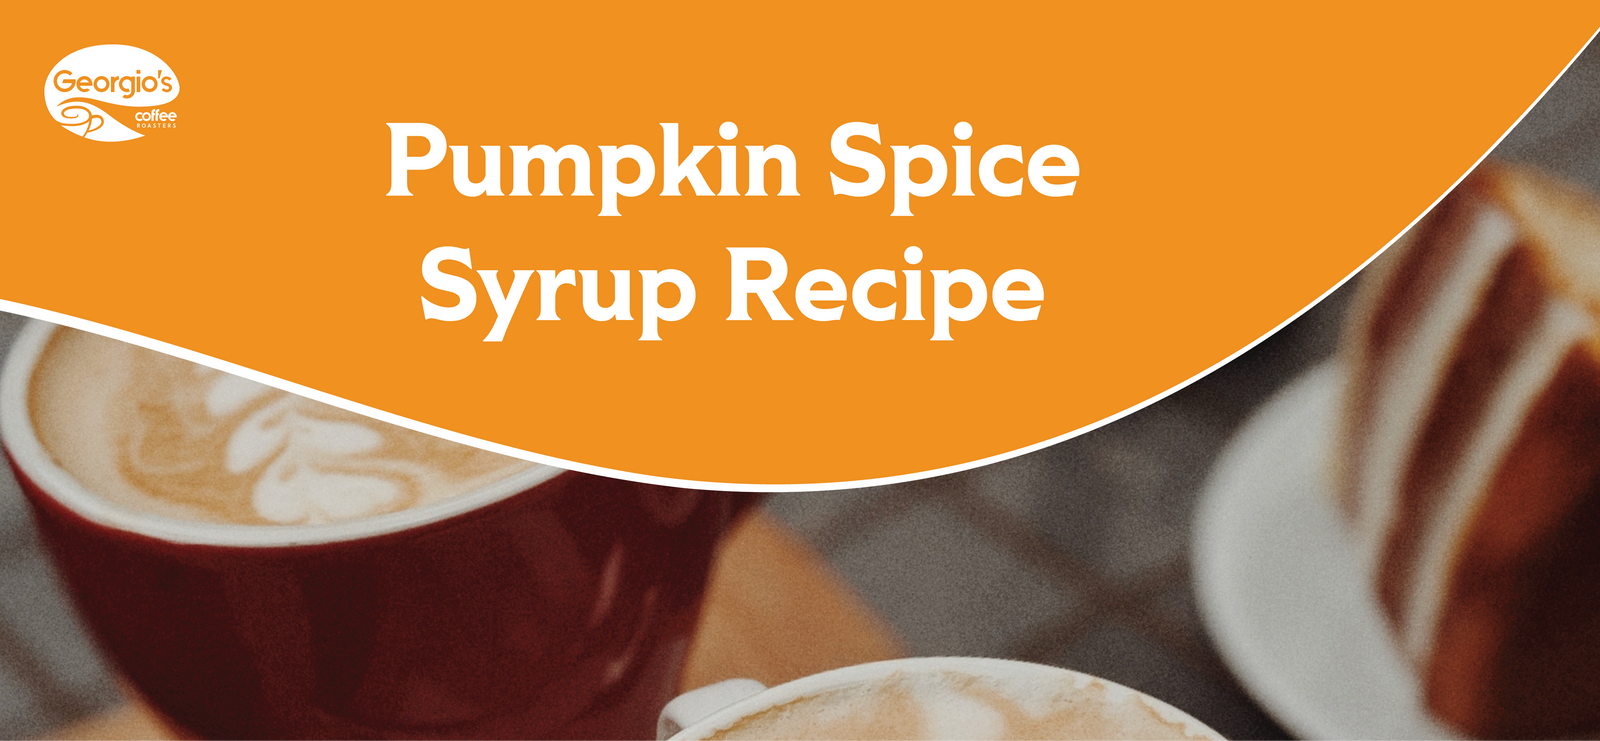 pumpkin spice syrup, pumpkin spice syrup recipe